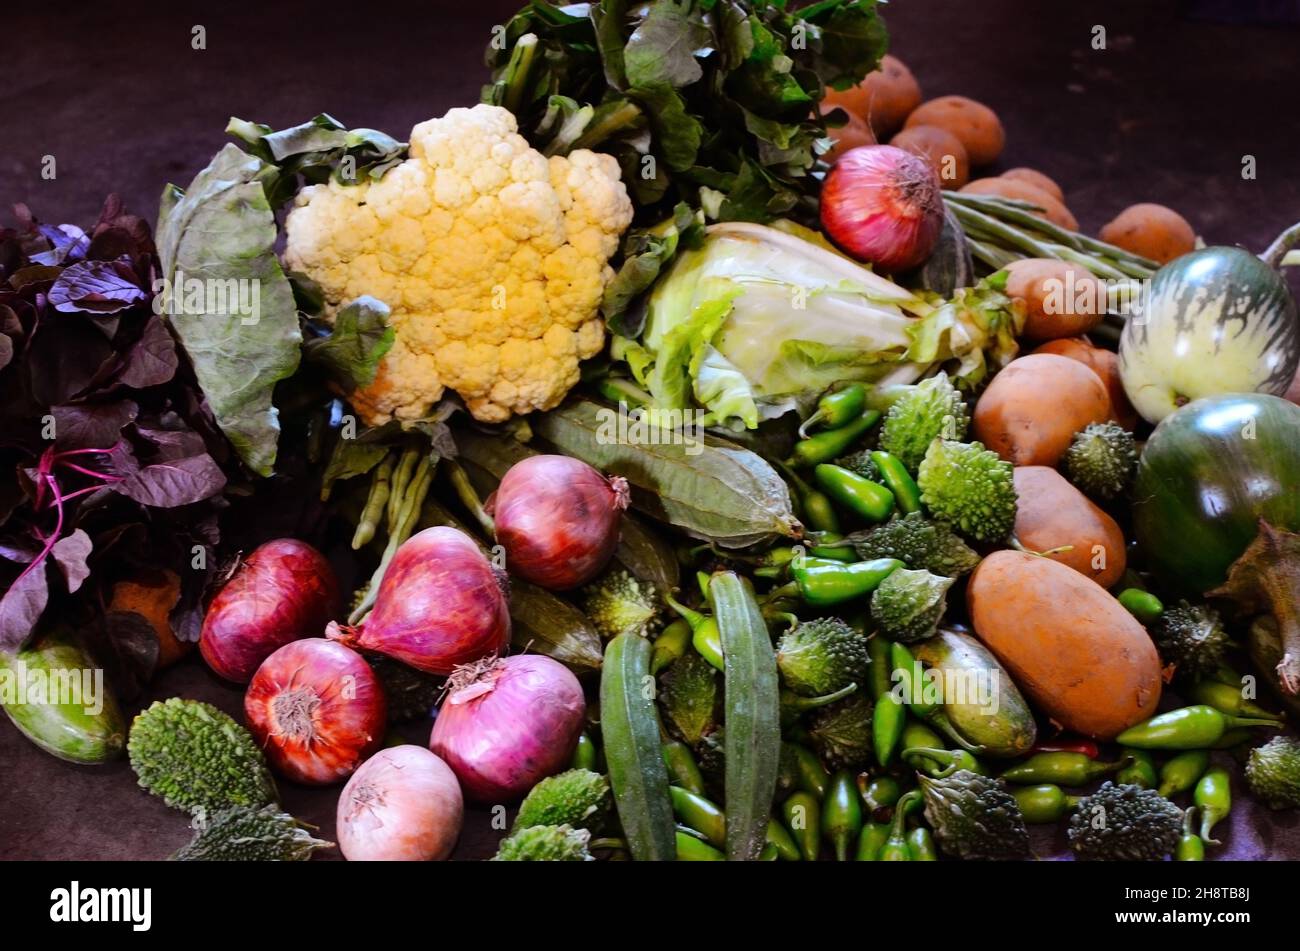 Hay una variedad de verduras, papa, calabaza puntiaguda, karela, cebolla, Ajo, jengibre, coliflor, col Foto de stock